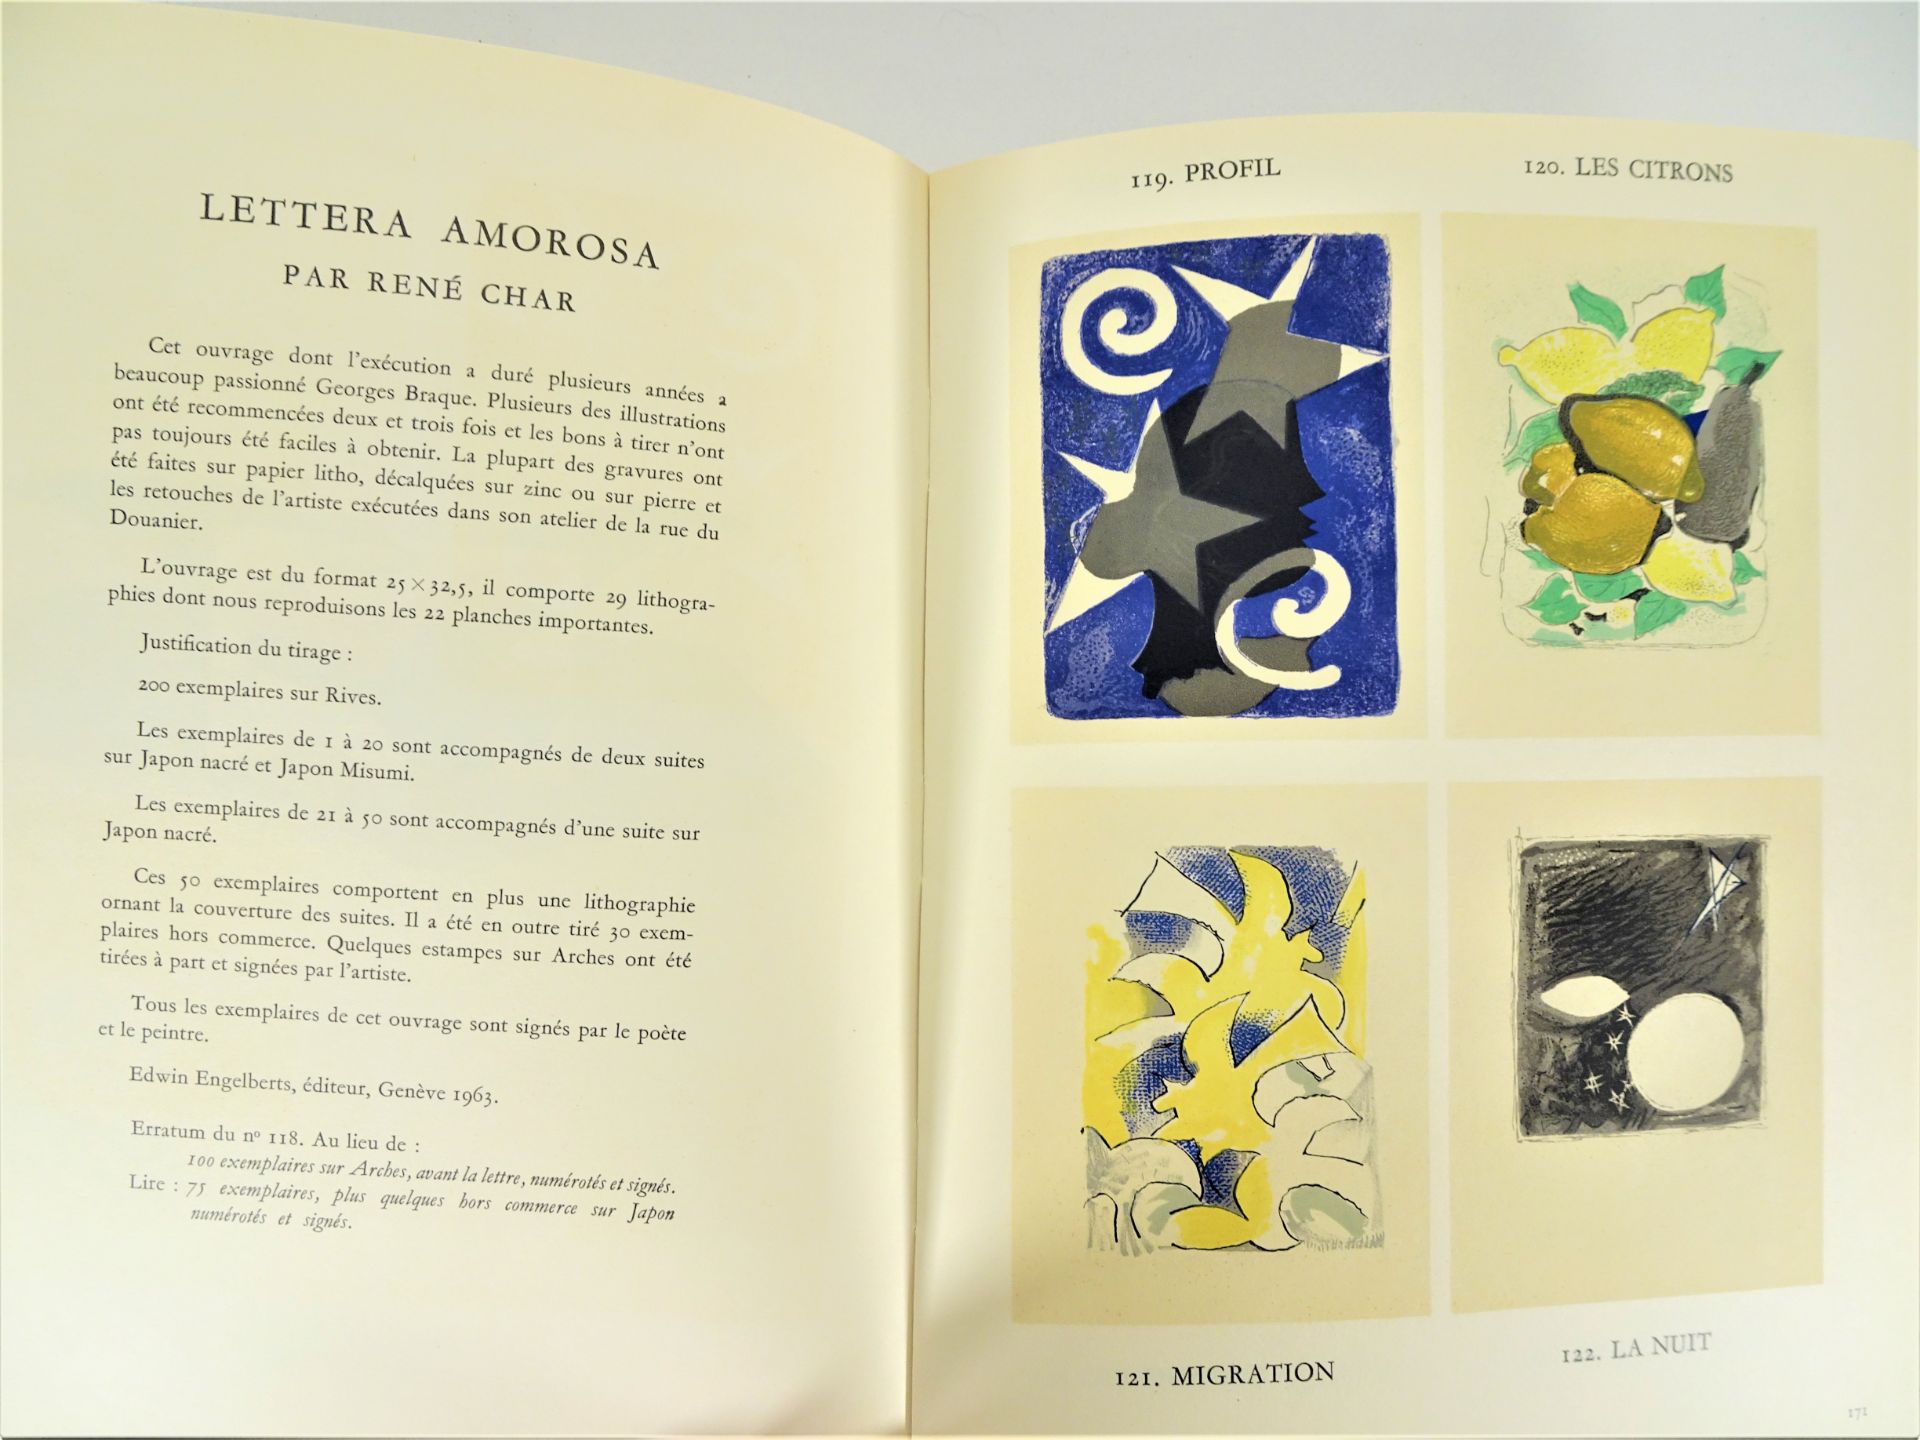 |Art| George Braque, "Braque lithographe", 1963, édition limitée. Fernand Mourlot, catalogue - Image 9 of 12